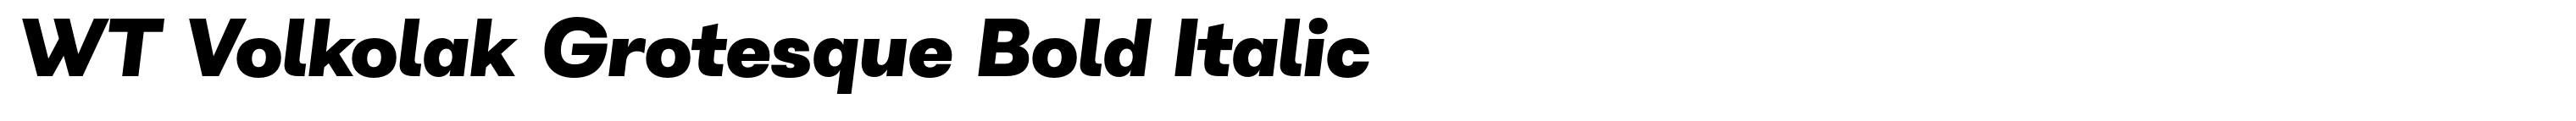 WT Volkolak Grotesque Bold Italic